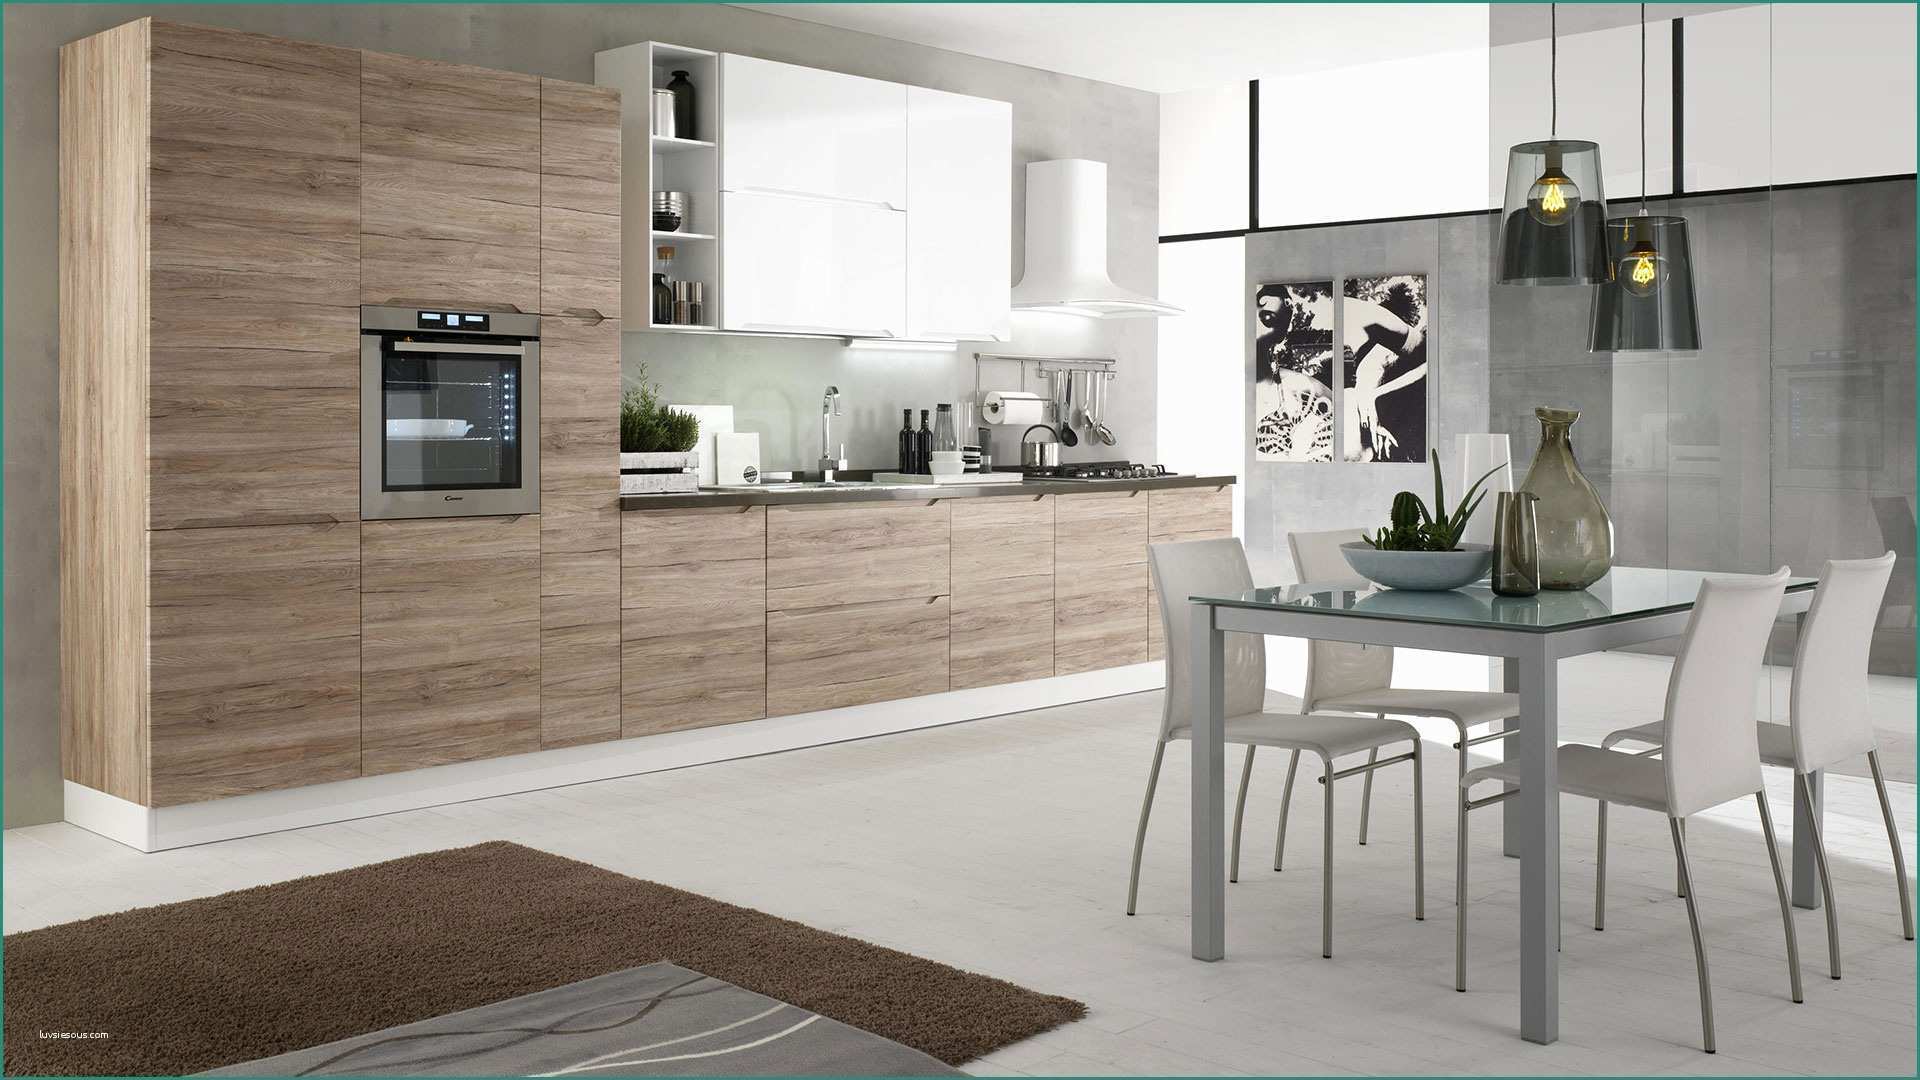 Cucine Contemporanee Bianche E Immagini Di Cucine Moderne Excellent soggiorno Open Space soggiorno